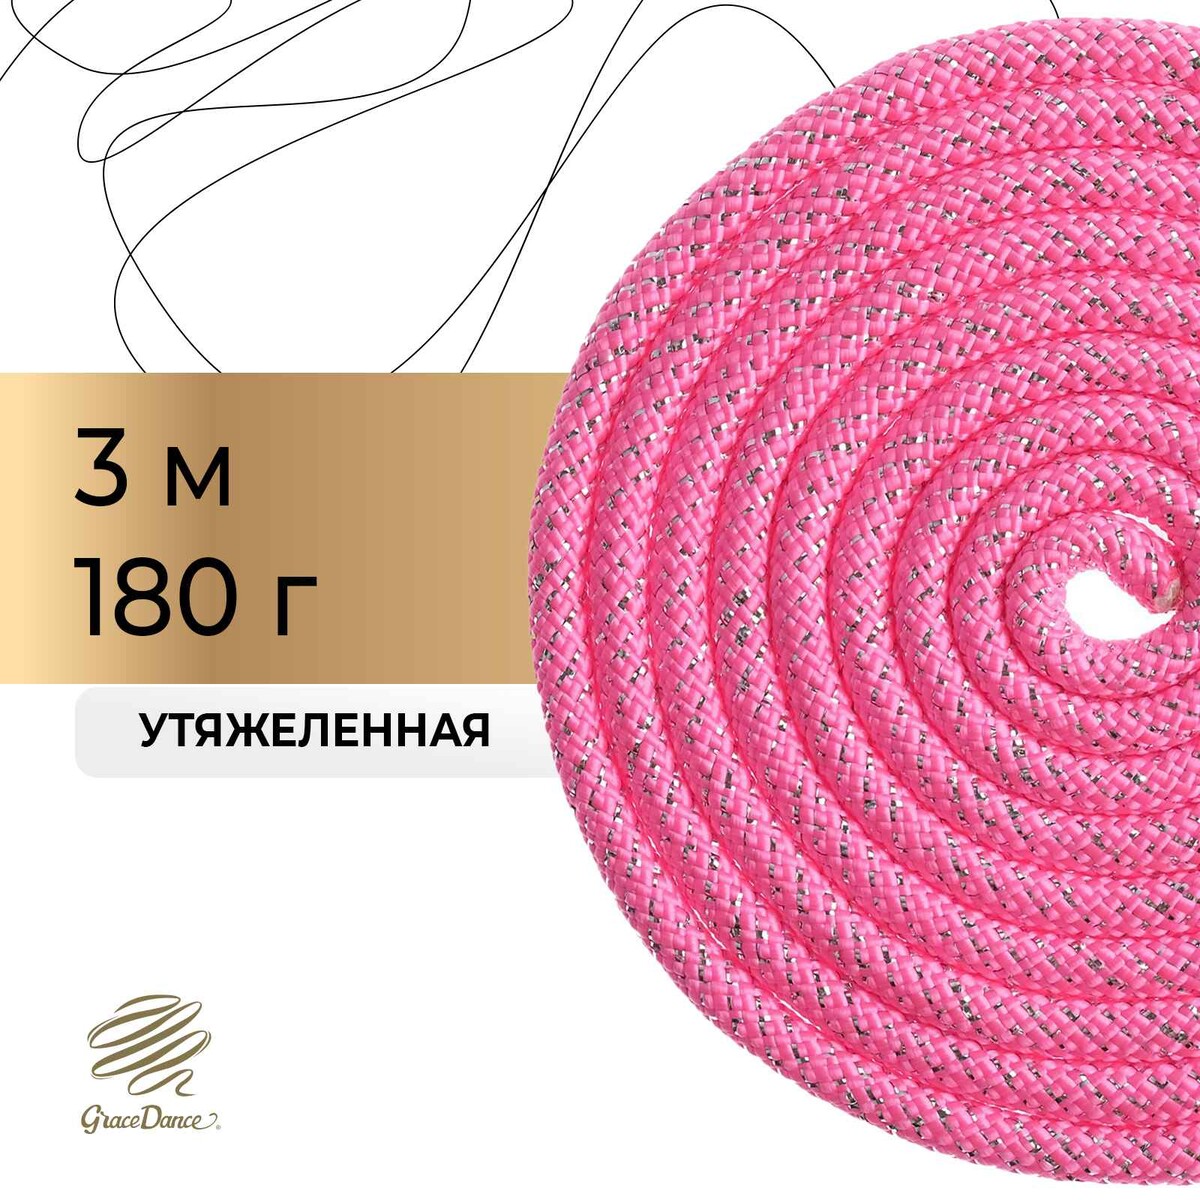 Скакалка для художественной гимнастики grace dance, с люрексом, 3 м, цвет розовый скакалка гимнастическая утяжелённая grace dance с люрексом 2 5 м 150 г неоновый розовый серебристый